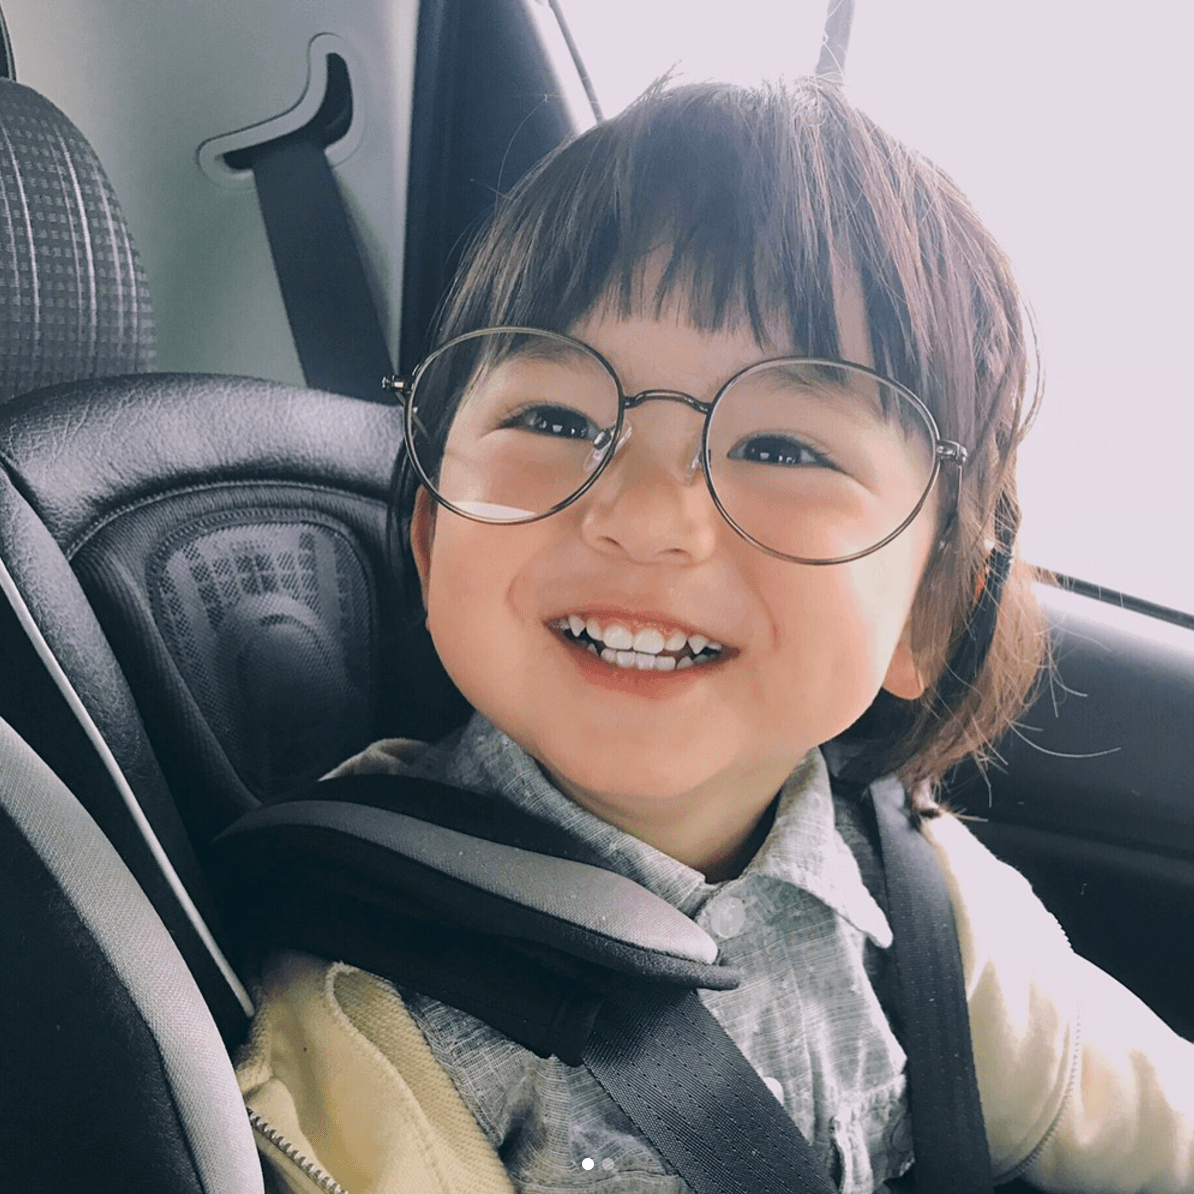 Em bé Nhật instagram này là một trong những đứa trẻ đáng yêu và thông minh nhất trên mạng xã hội Instagram. Hãy xem những bức hình của em bé này và tận hưởng một khoảnh khắc đầy tình cảm và kỷ niệm đáng nhớ.